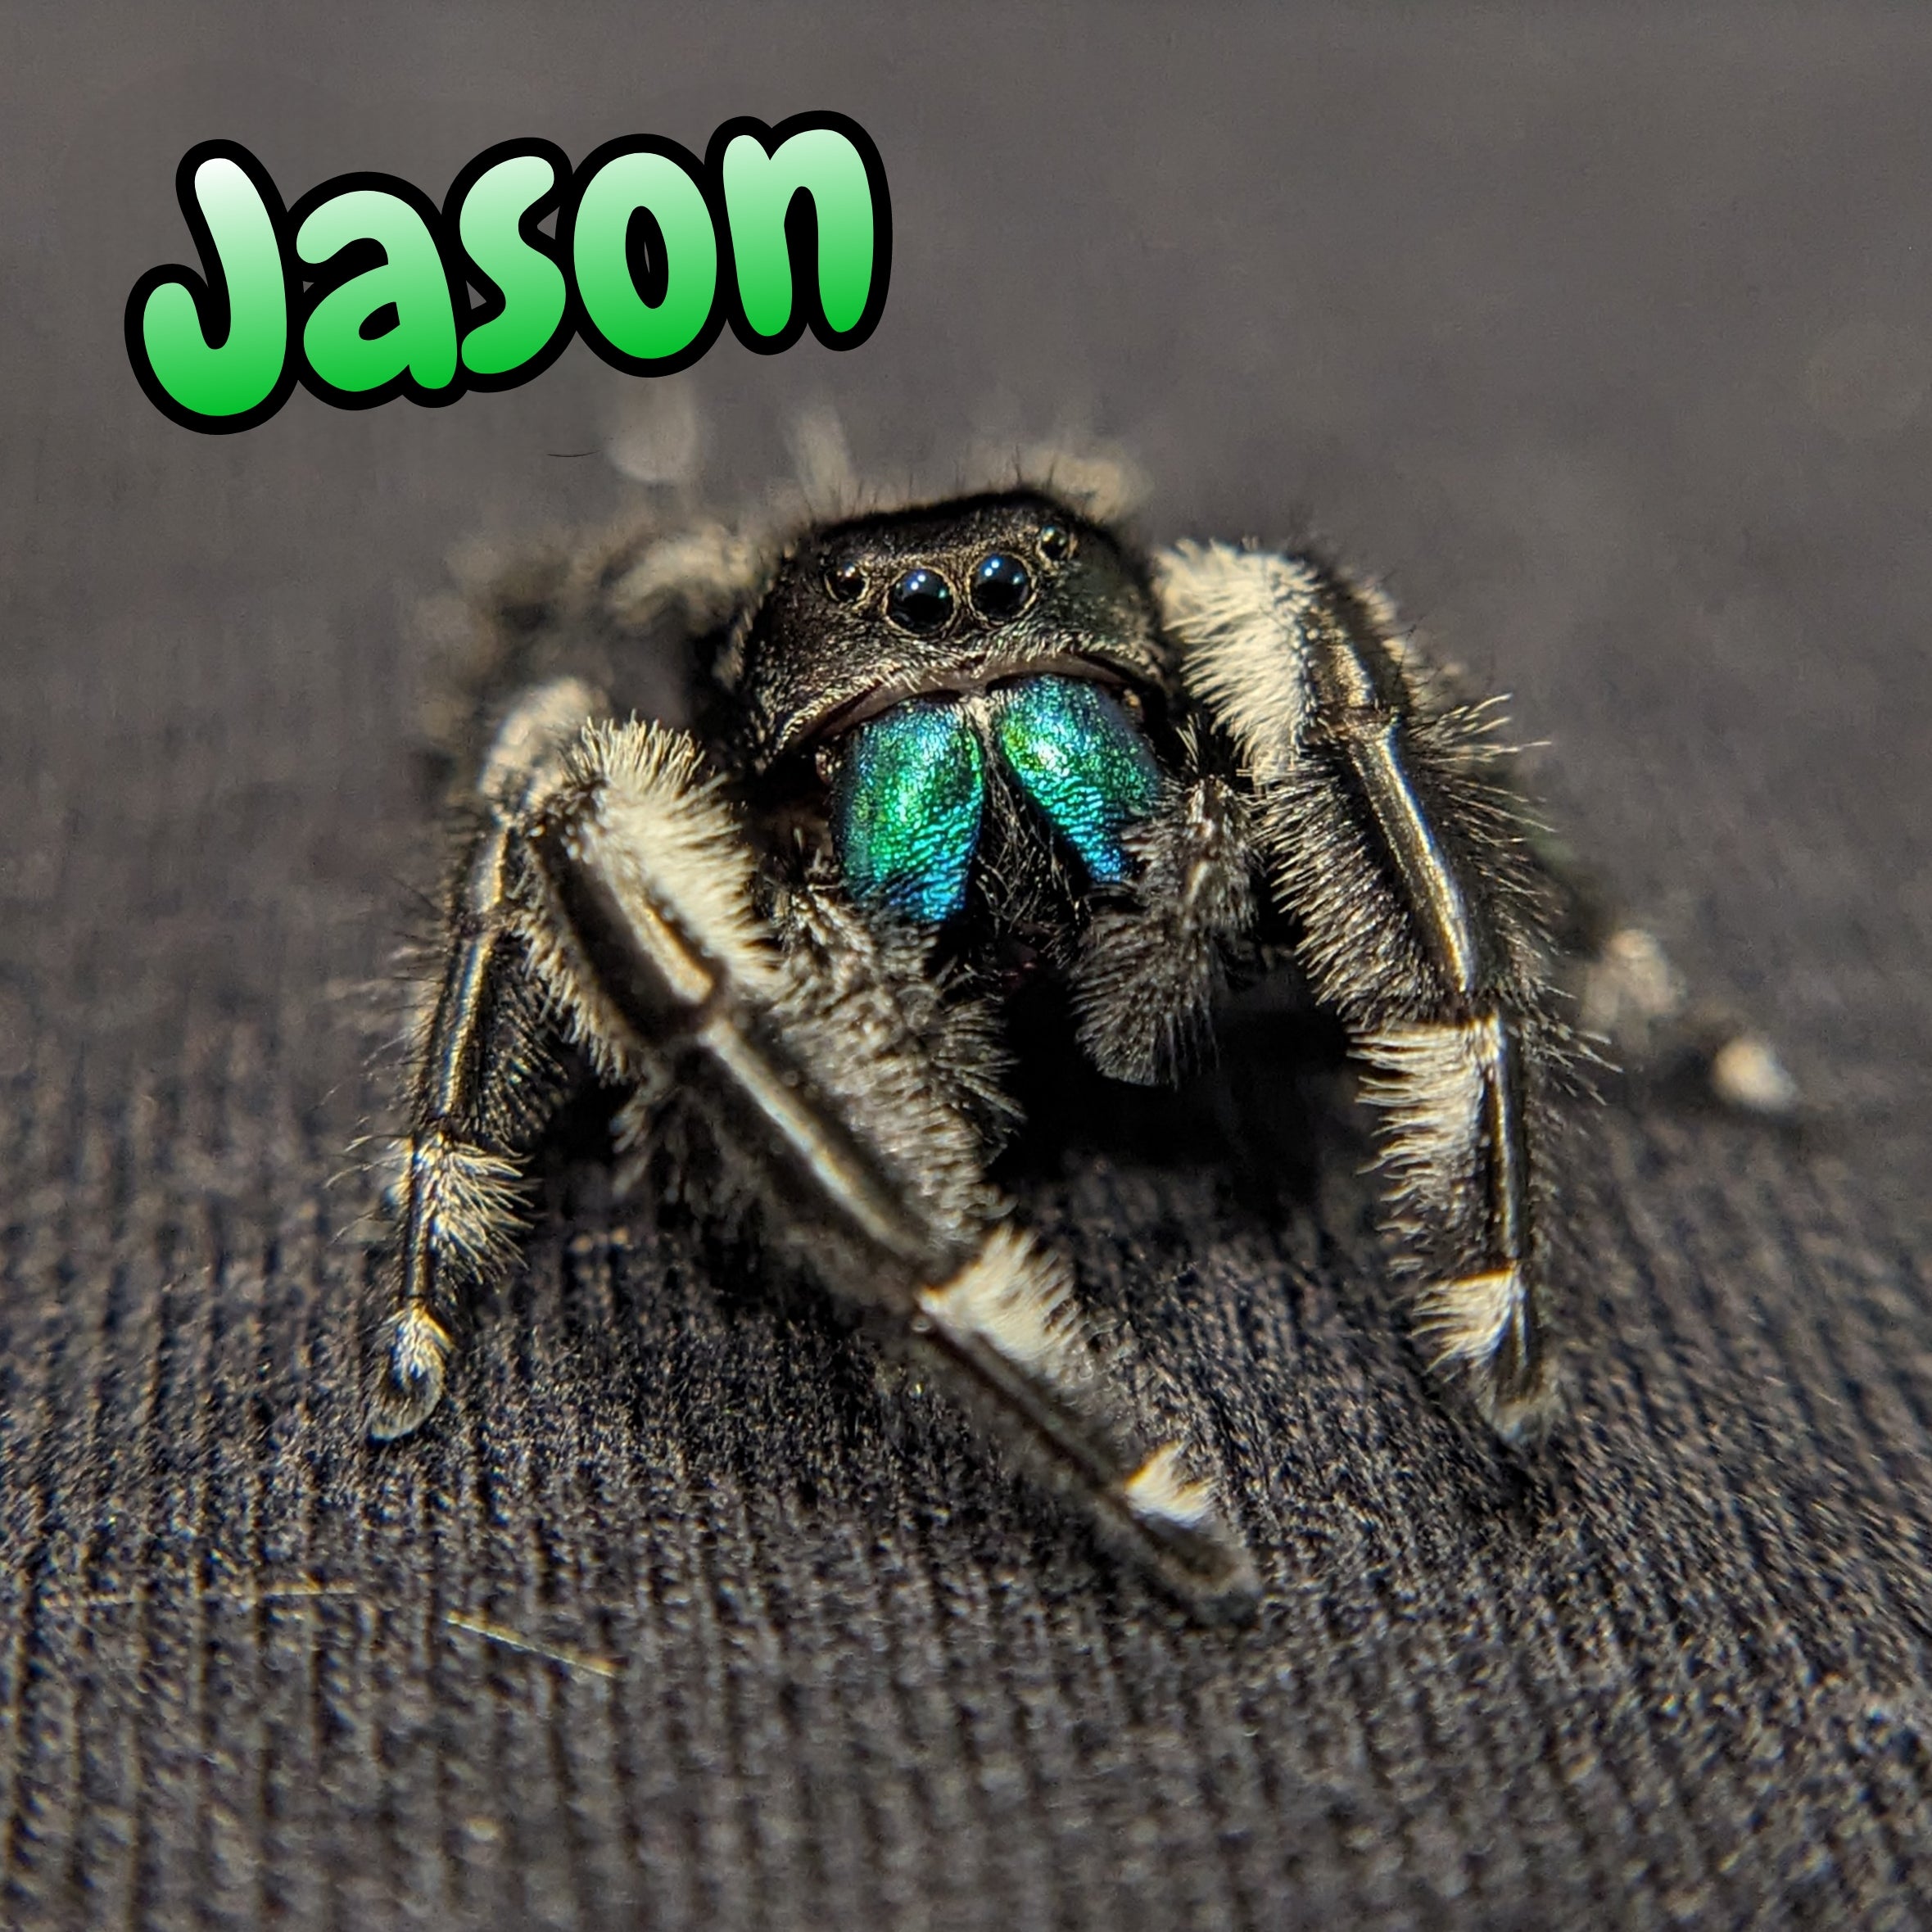 Regal Jumping Spider "Jason"